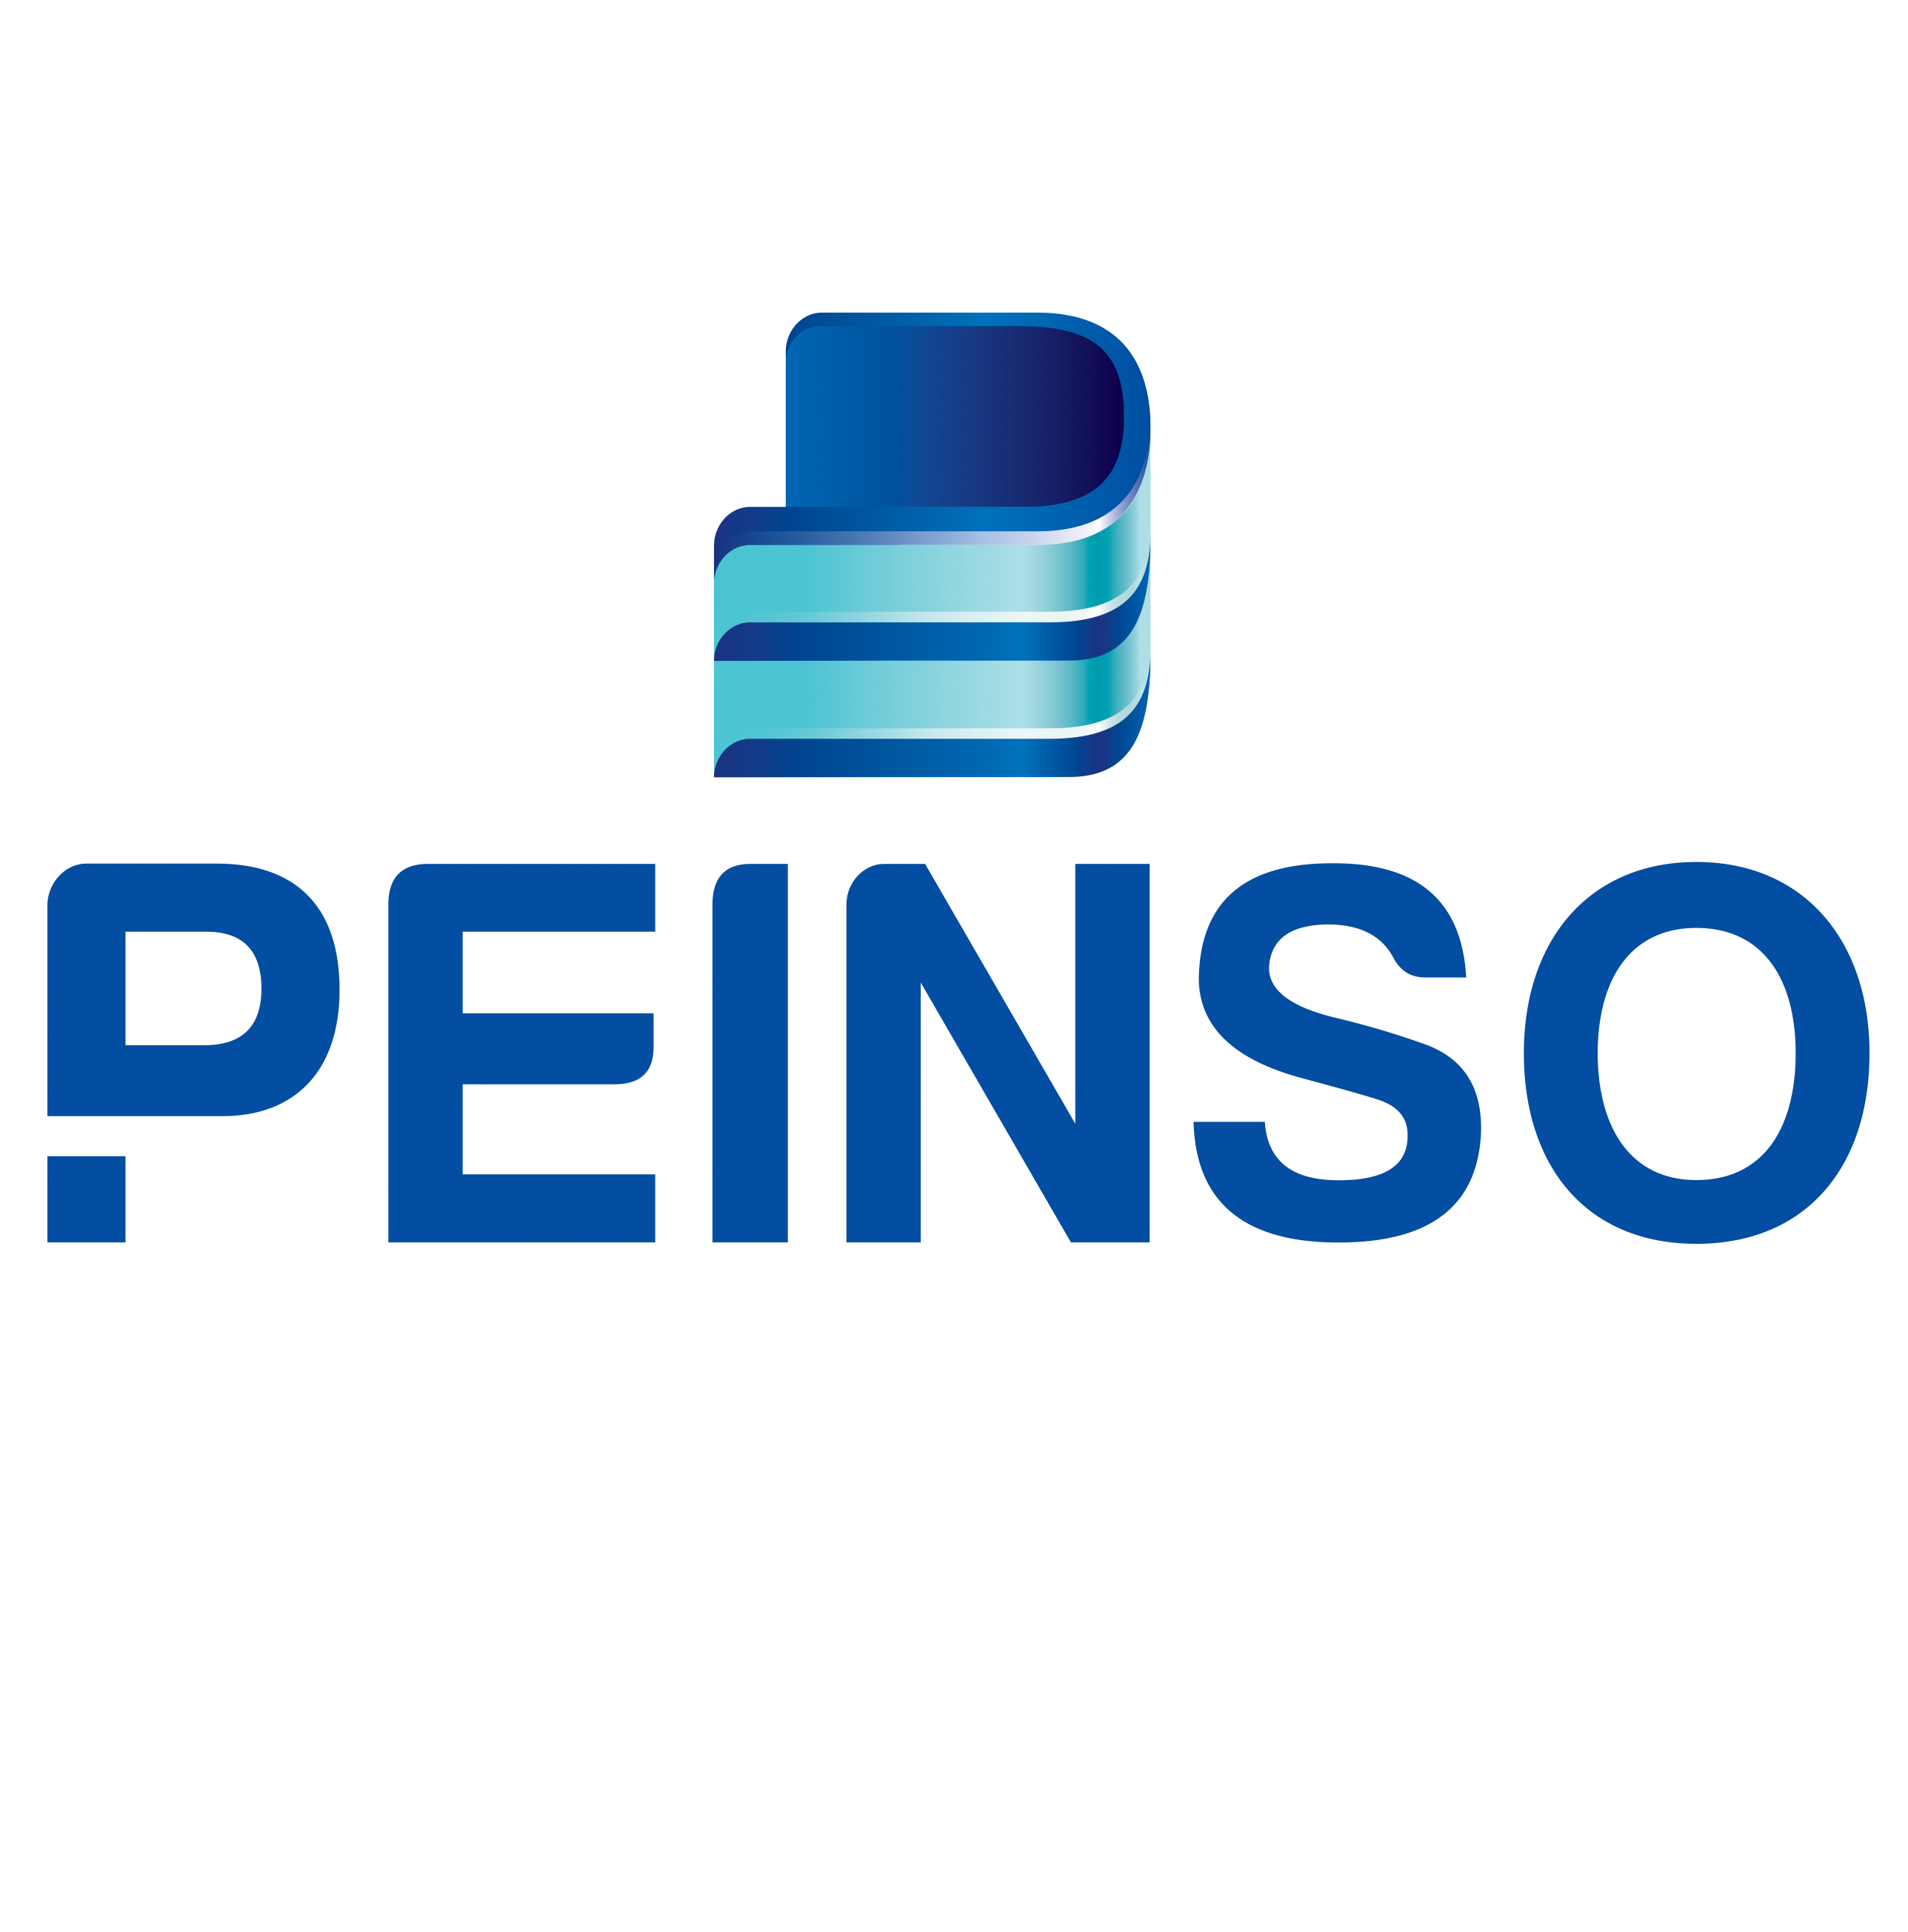 PEINSO Company